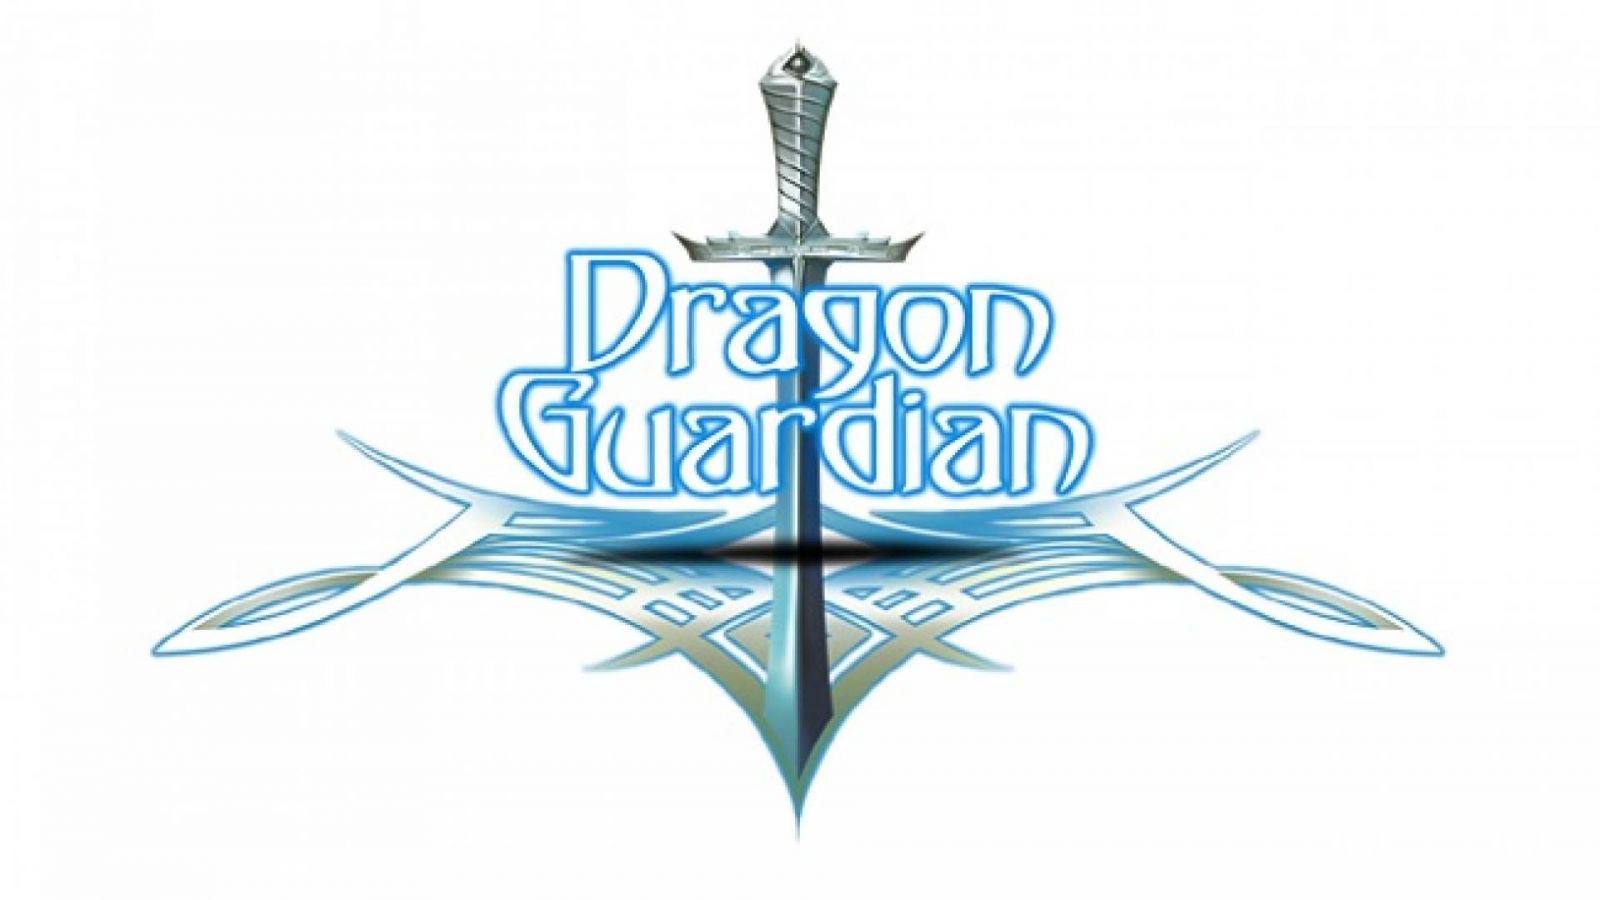 Dragon Guardian © Dragon Guardian